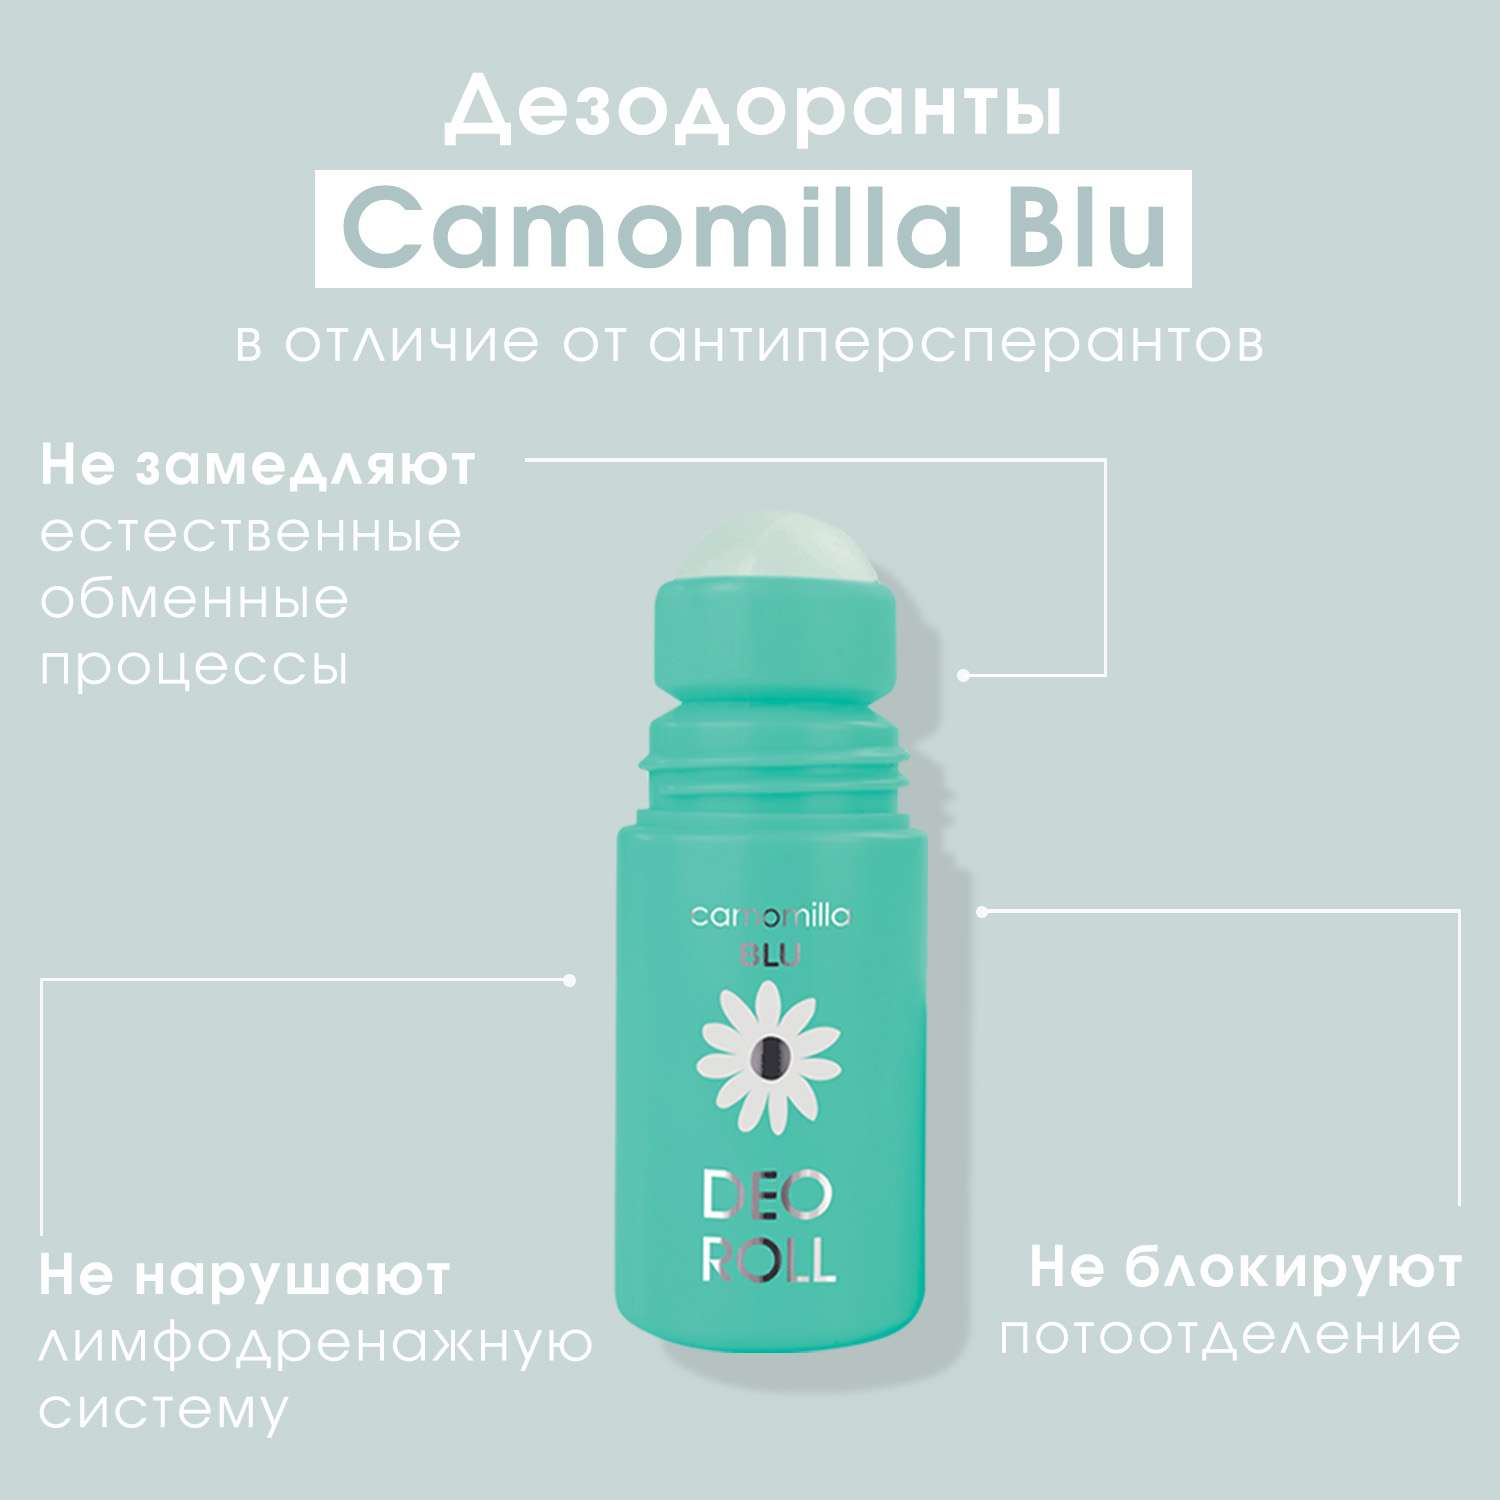 Дезодорант для тела Camomilla BLU увлажняющий для чувствительной кожи Deo Roll moisturizing action deodorant 50 мл - фото 6